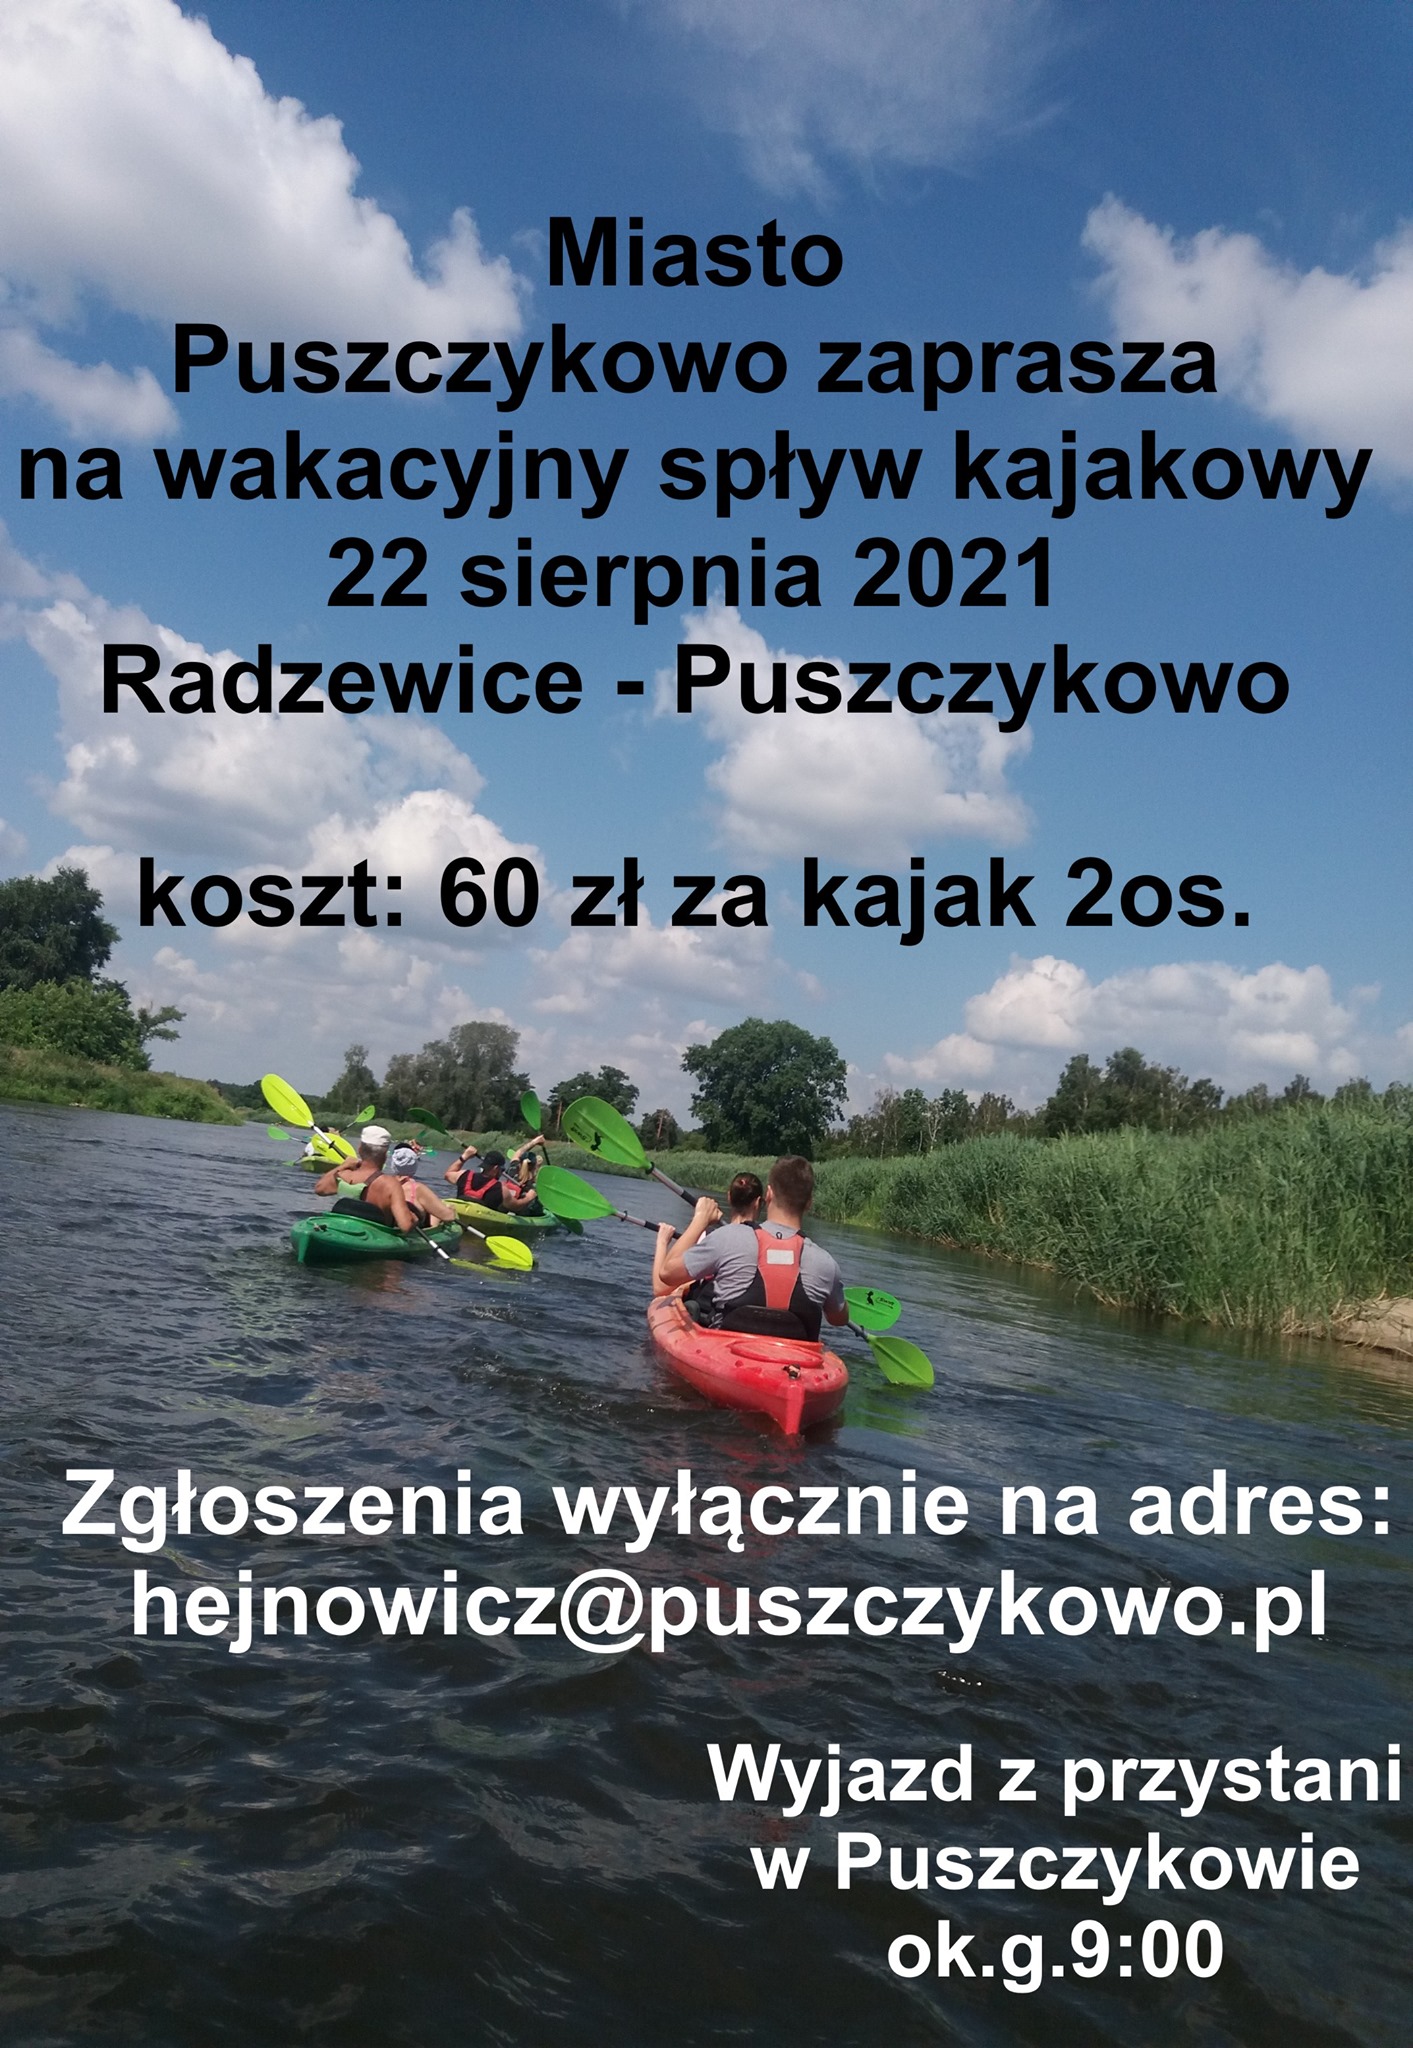 Wakacyjny spływ kajakowy na trasie Radzewice-Puszczykowo w dniu 22 sierpnia 2021 roku.